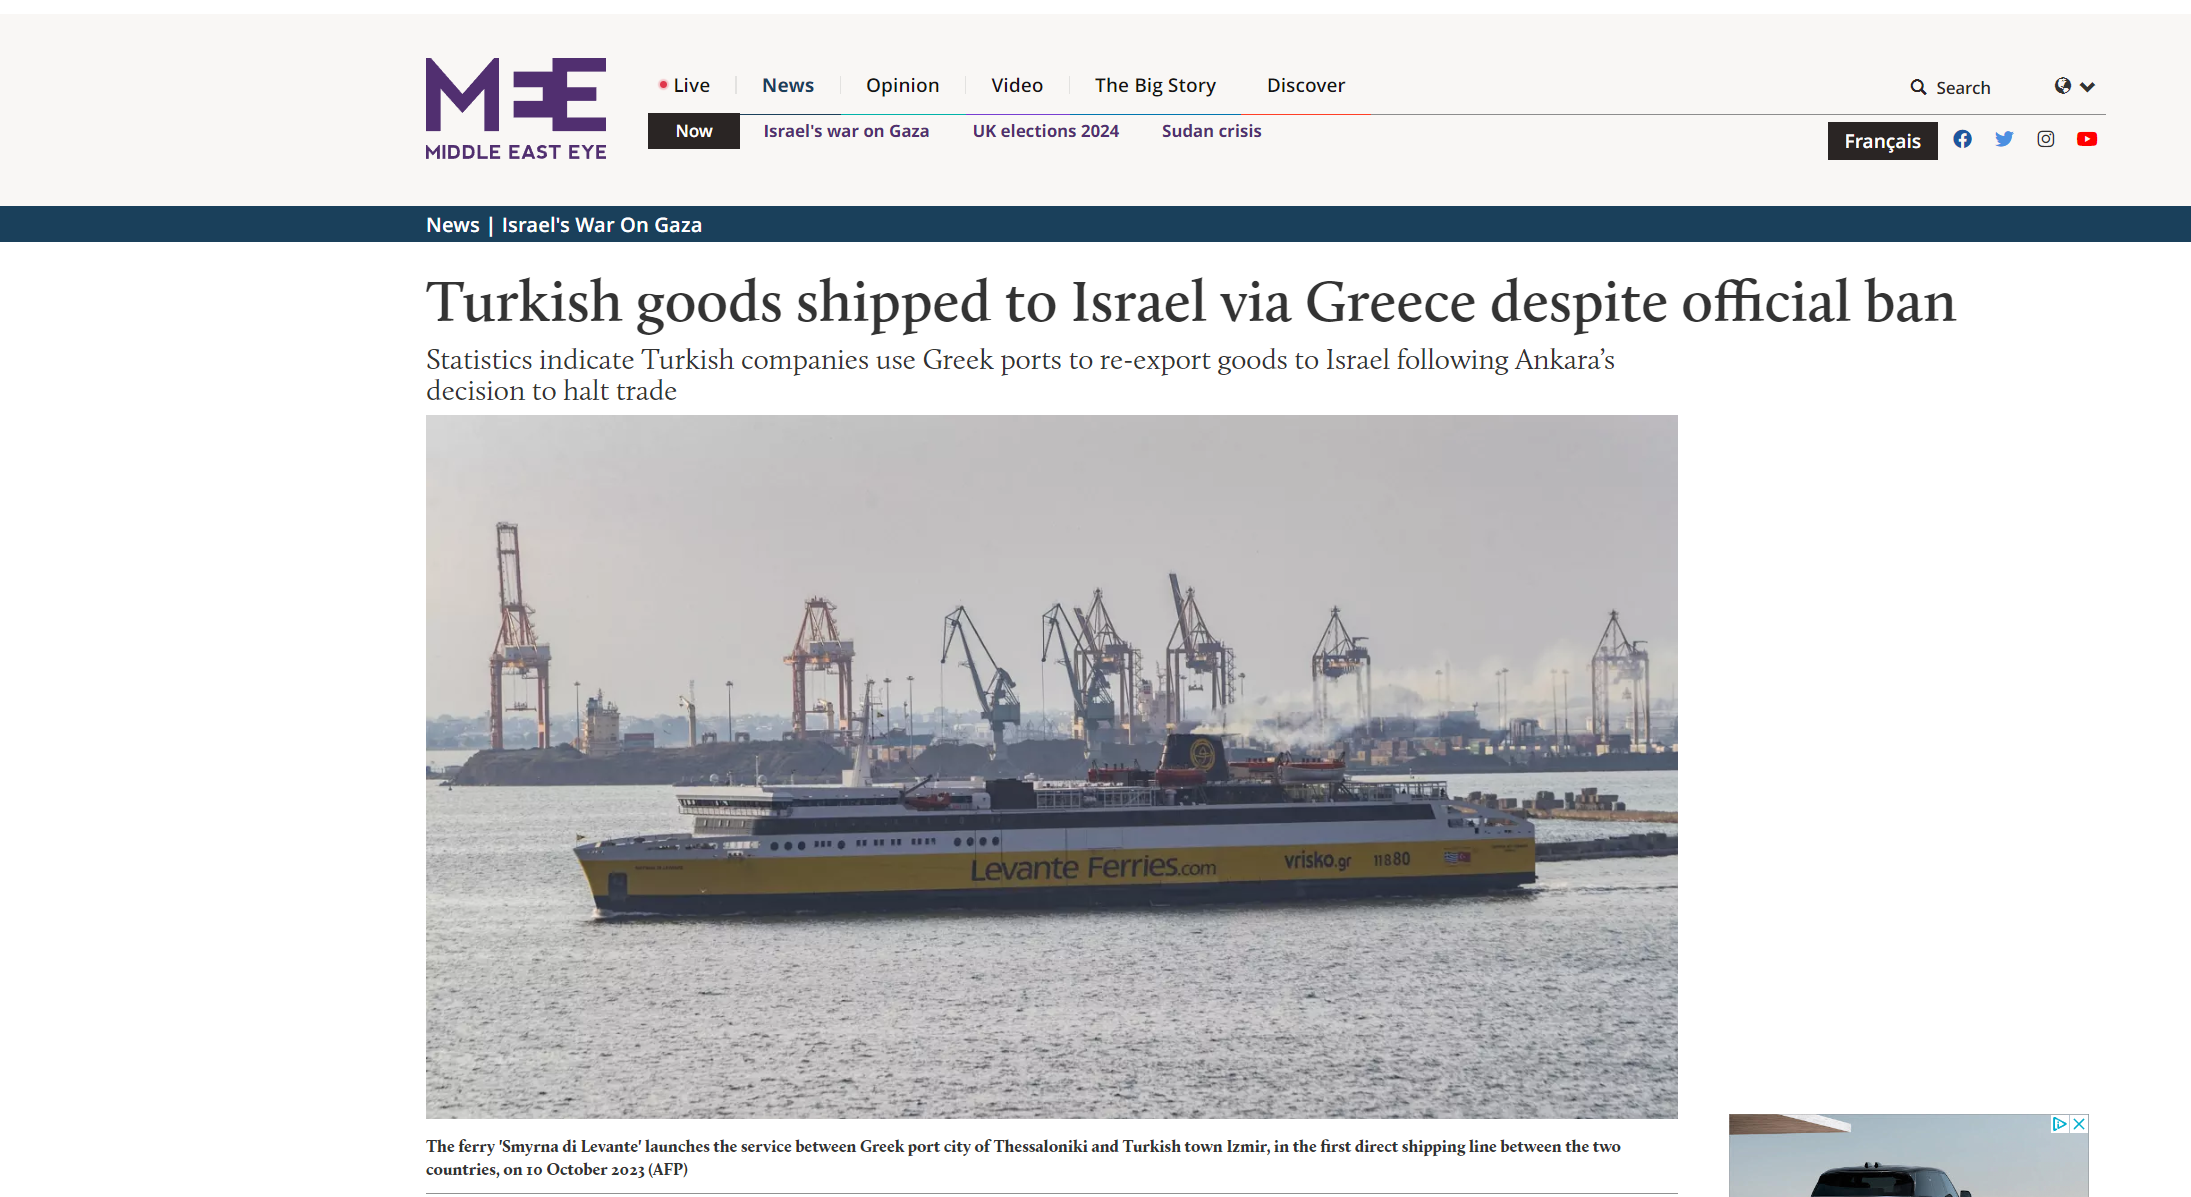 Middle East Eye: Τουρκικά προϊόντα αποστέλλονται στο Ισραήλ μέσω Ελλάδας παρά την επίσημη απαγόρευση